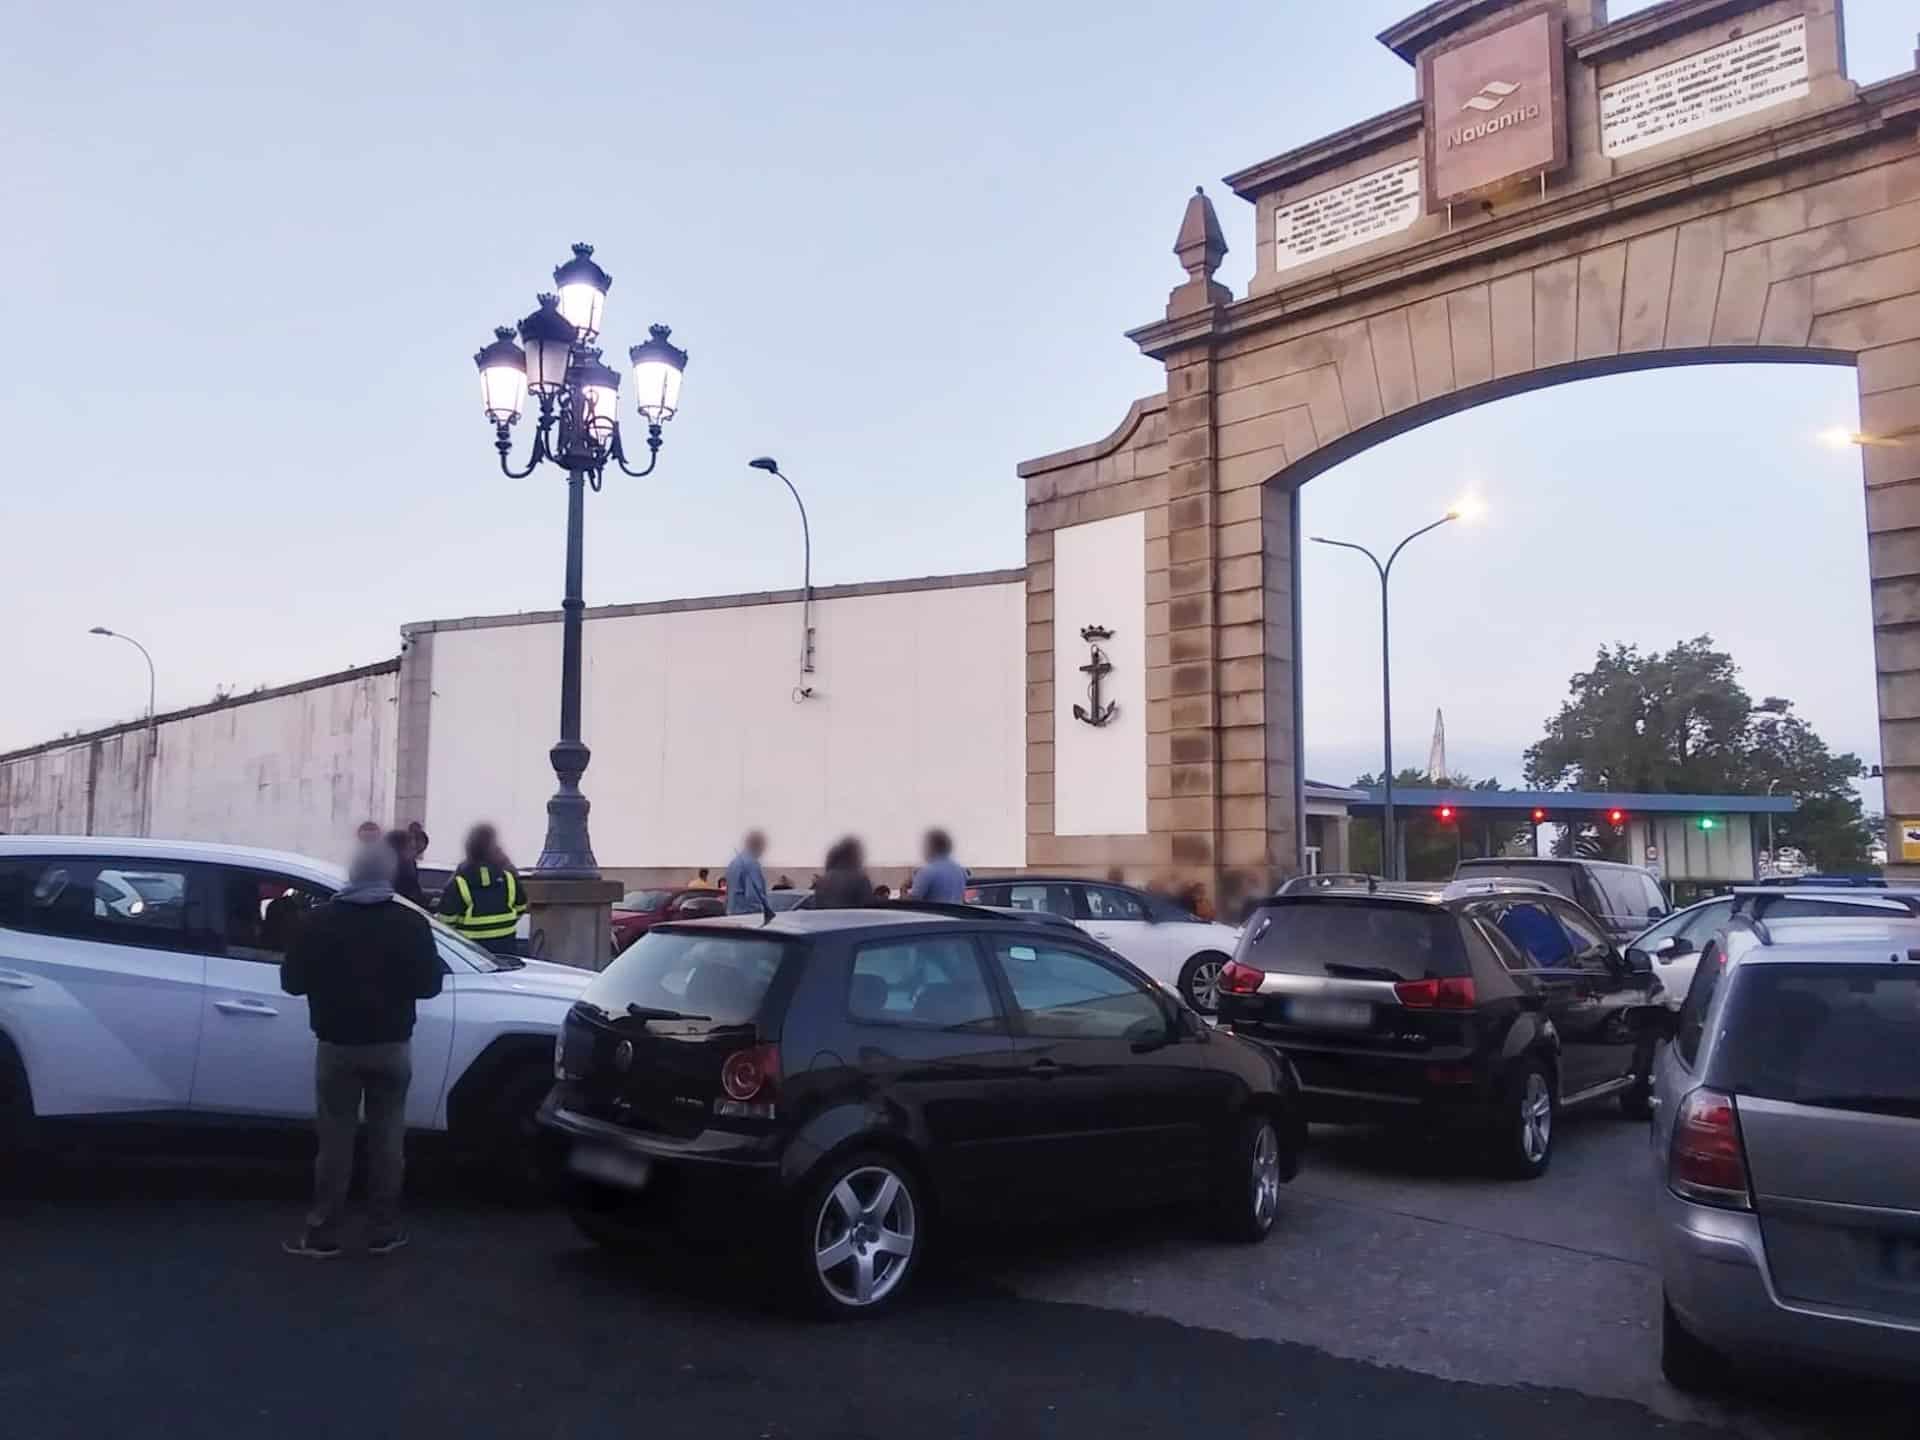 Trabajadores de Navantia a las puertas del astillero de Ferrol.

Los trabajadores de Navantia Ferrol han bloqueado durante tres horas el acceso a las instalaciones del astillero en reivindicación de avances en la negociación de un nuevo convenio colectivo.

SOCIEDAD AUTONOMÍAS